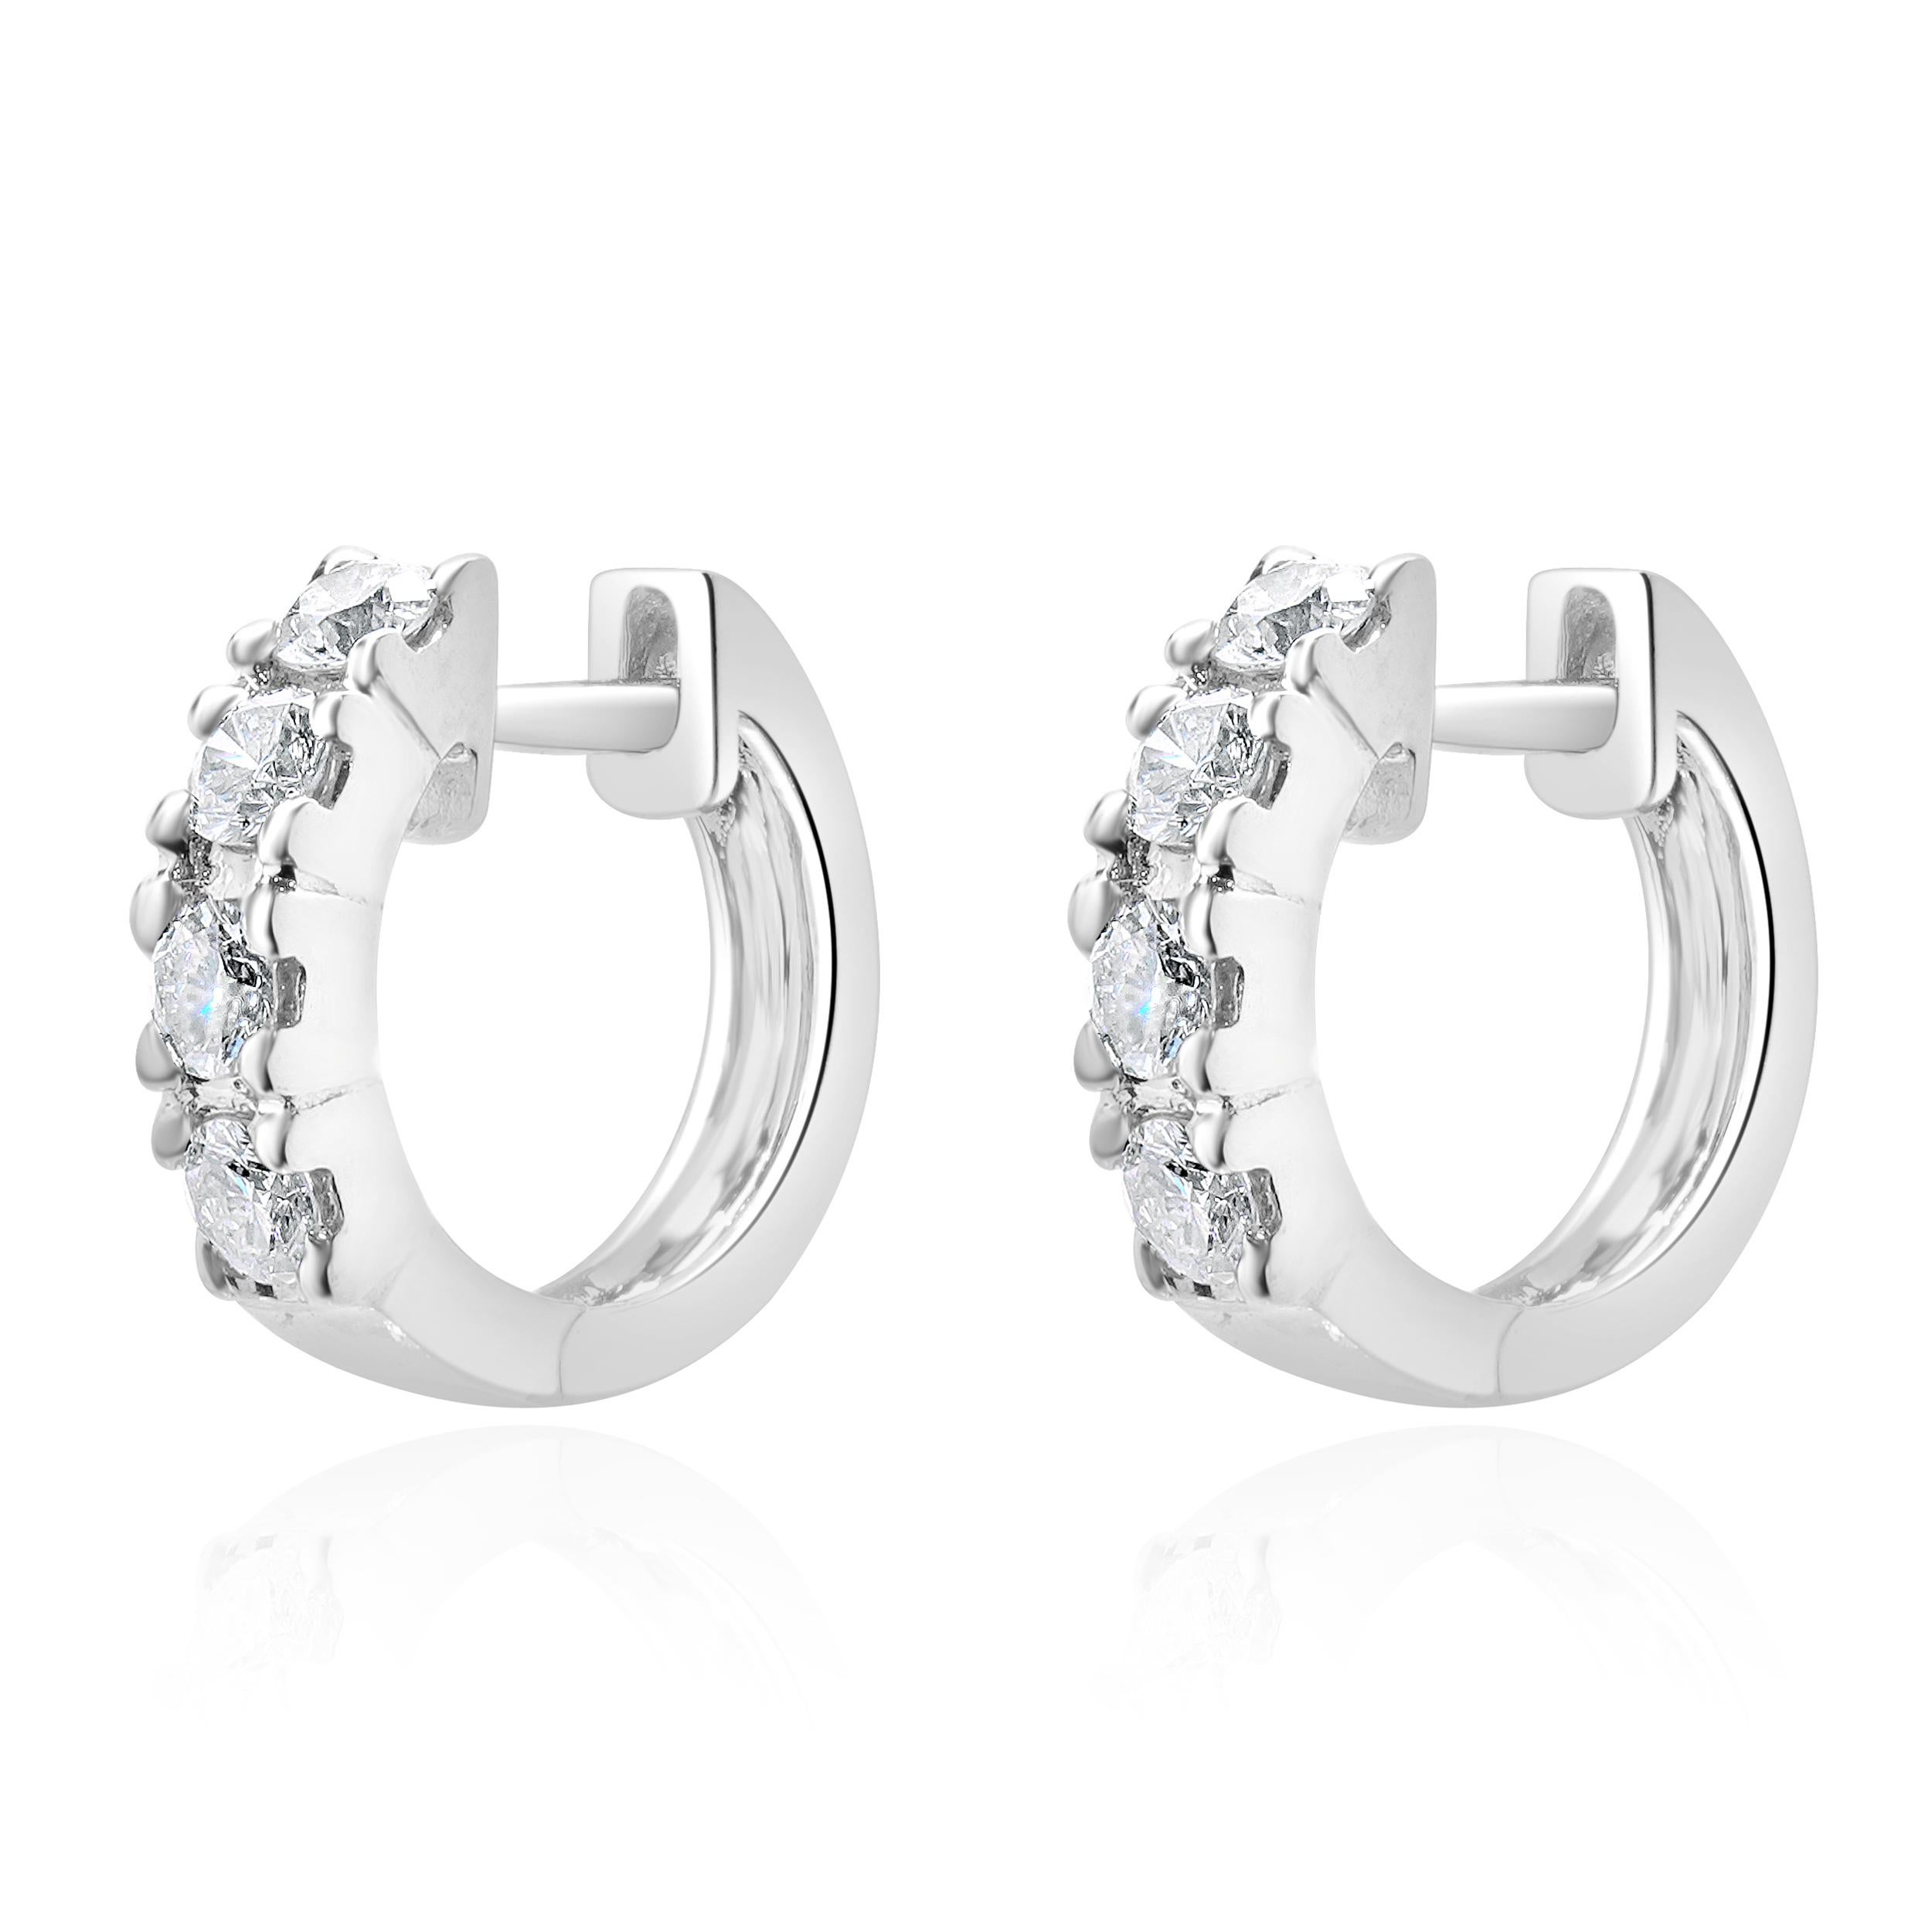 Designer : design personnalisé
Matériau : Or blanc 18K
Diamants : 8 diamants ronds de taille brillant =0.48cttw
Couleur : H 
Clarté : SI1-2
Dimensions : les boucles d'oreilles mesurent 13.20 mm 
Poids : 3,63 grammes
